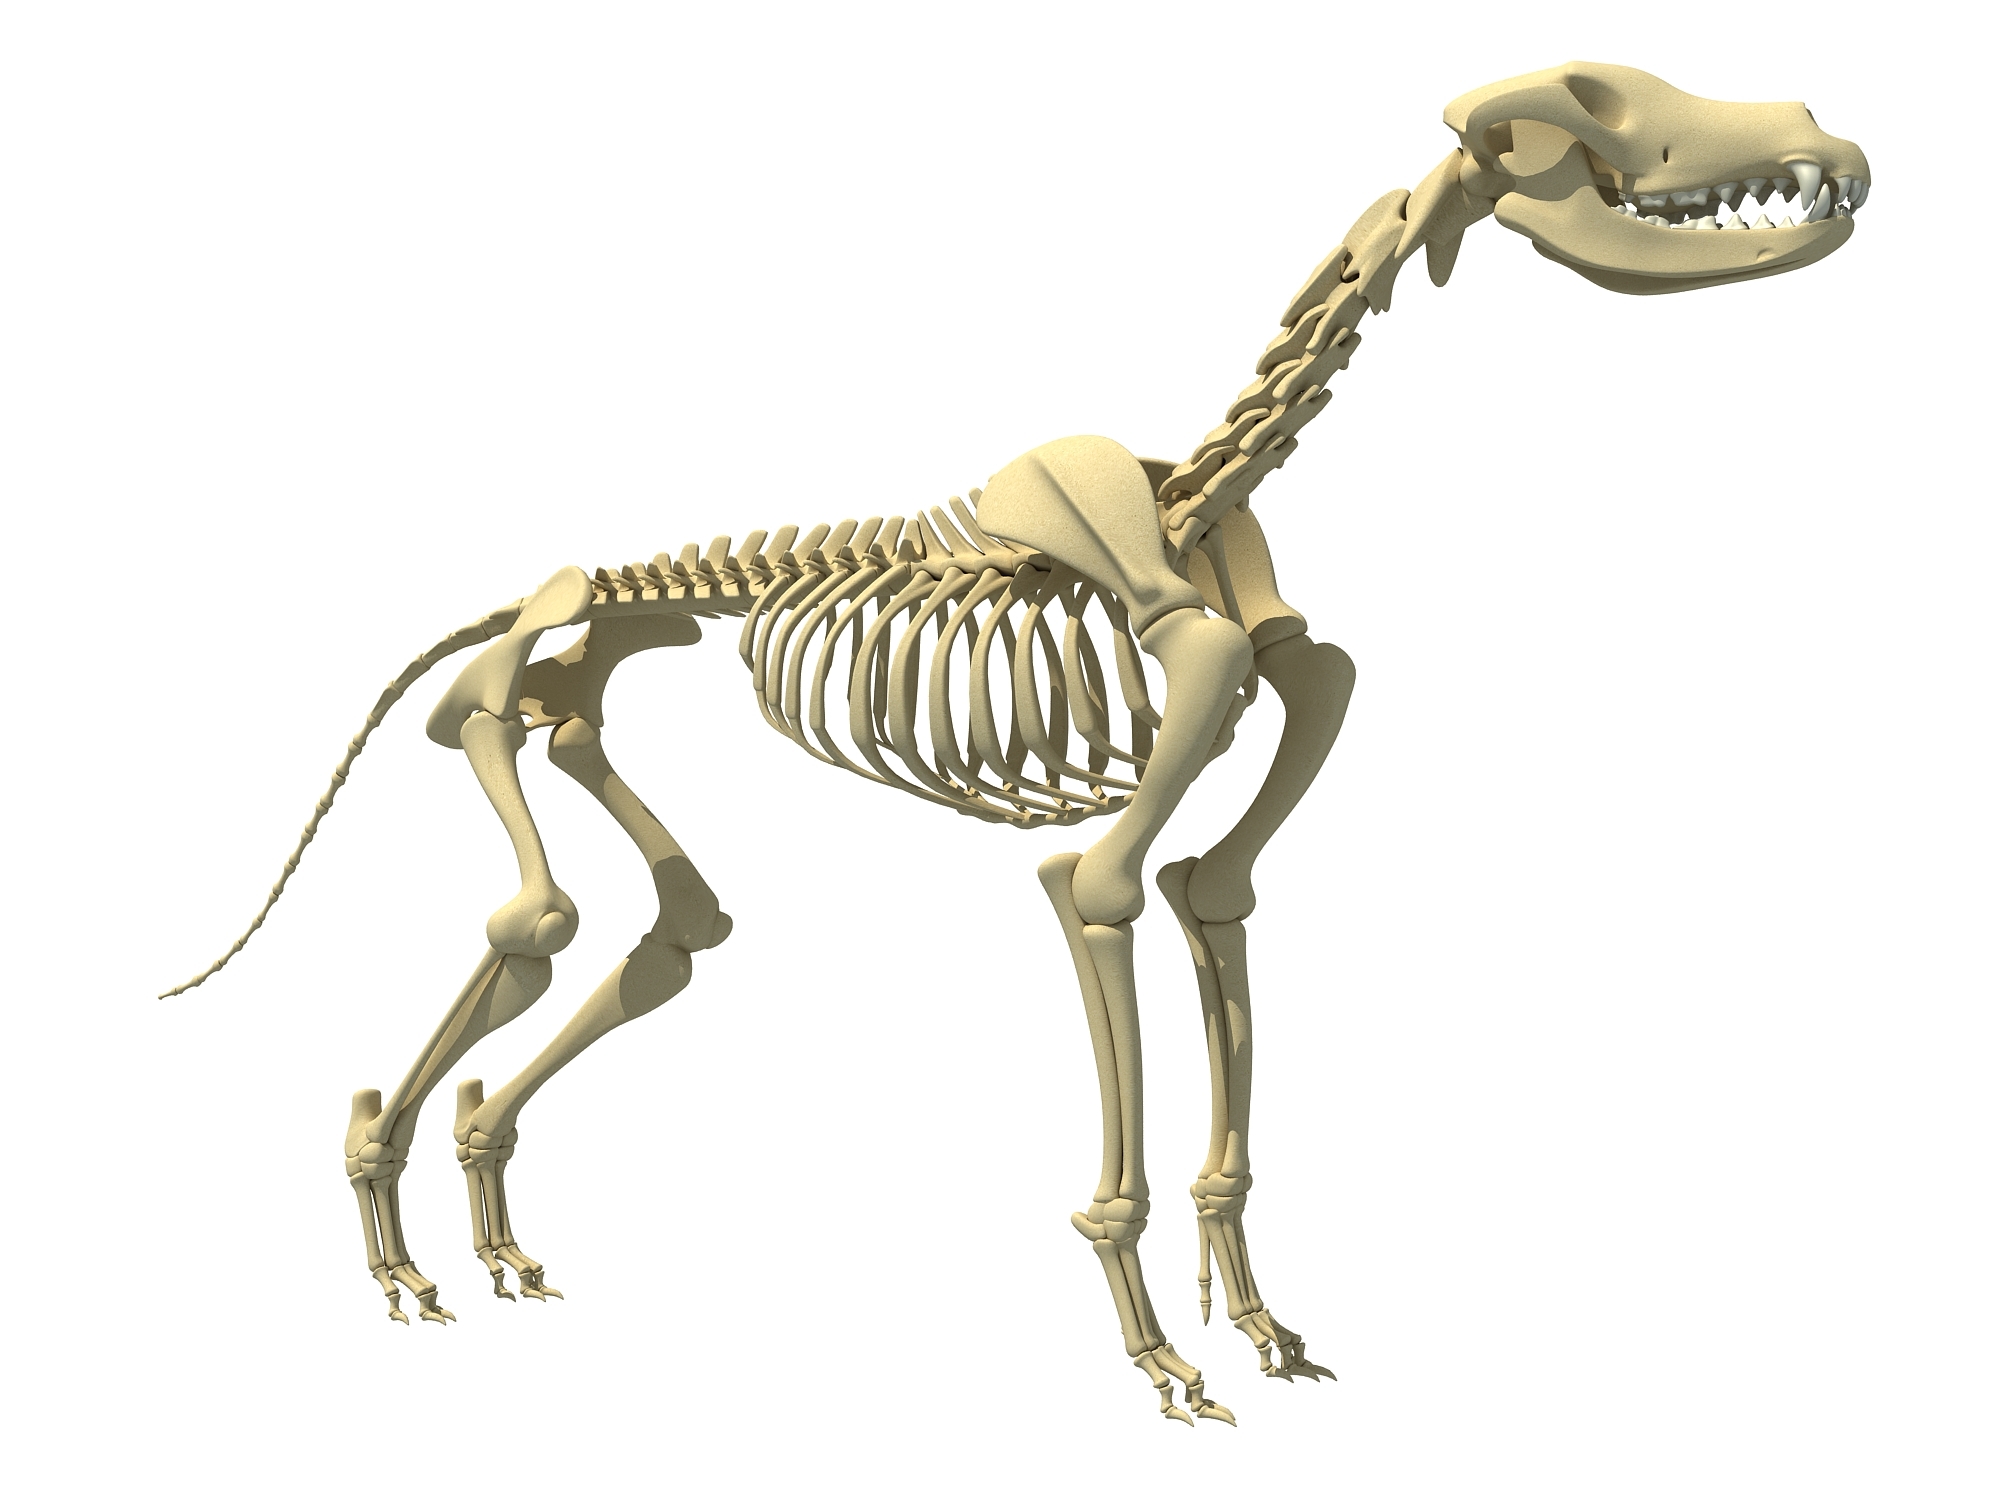 狗骨骼解剖学 库存例证. 插画 包括有 部分, 空白, 处理, 结构, 似犬, 哺乳动物, 兽医, 医学 - 153407923